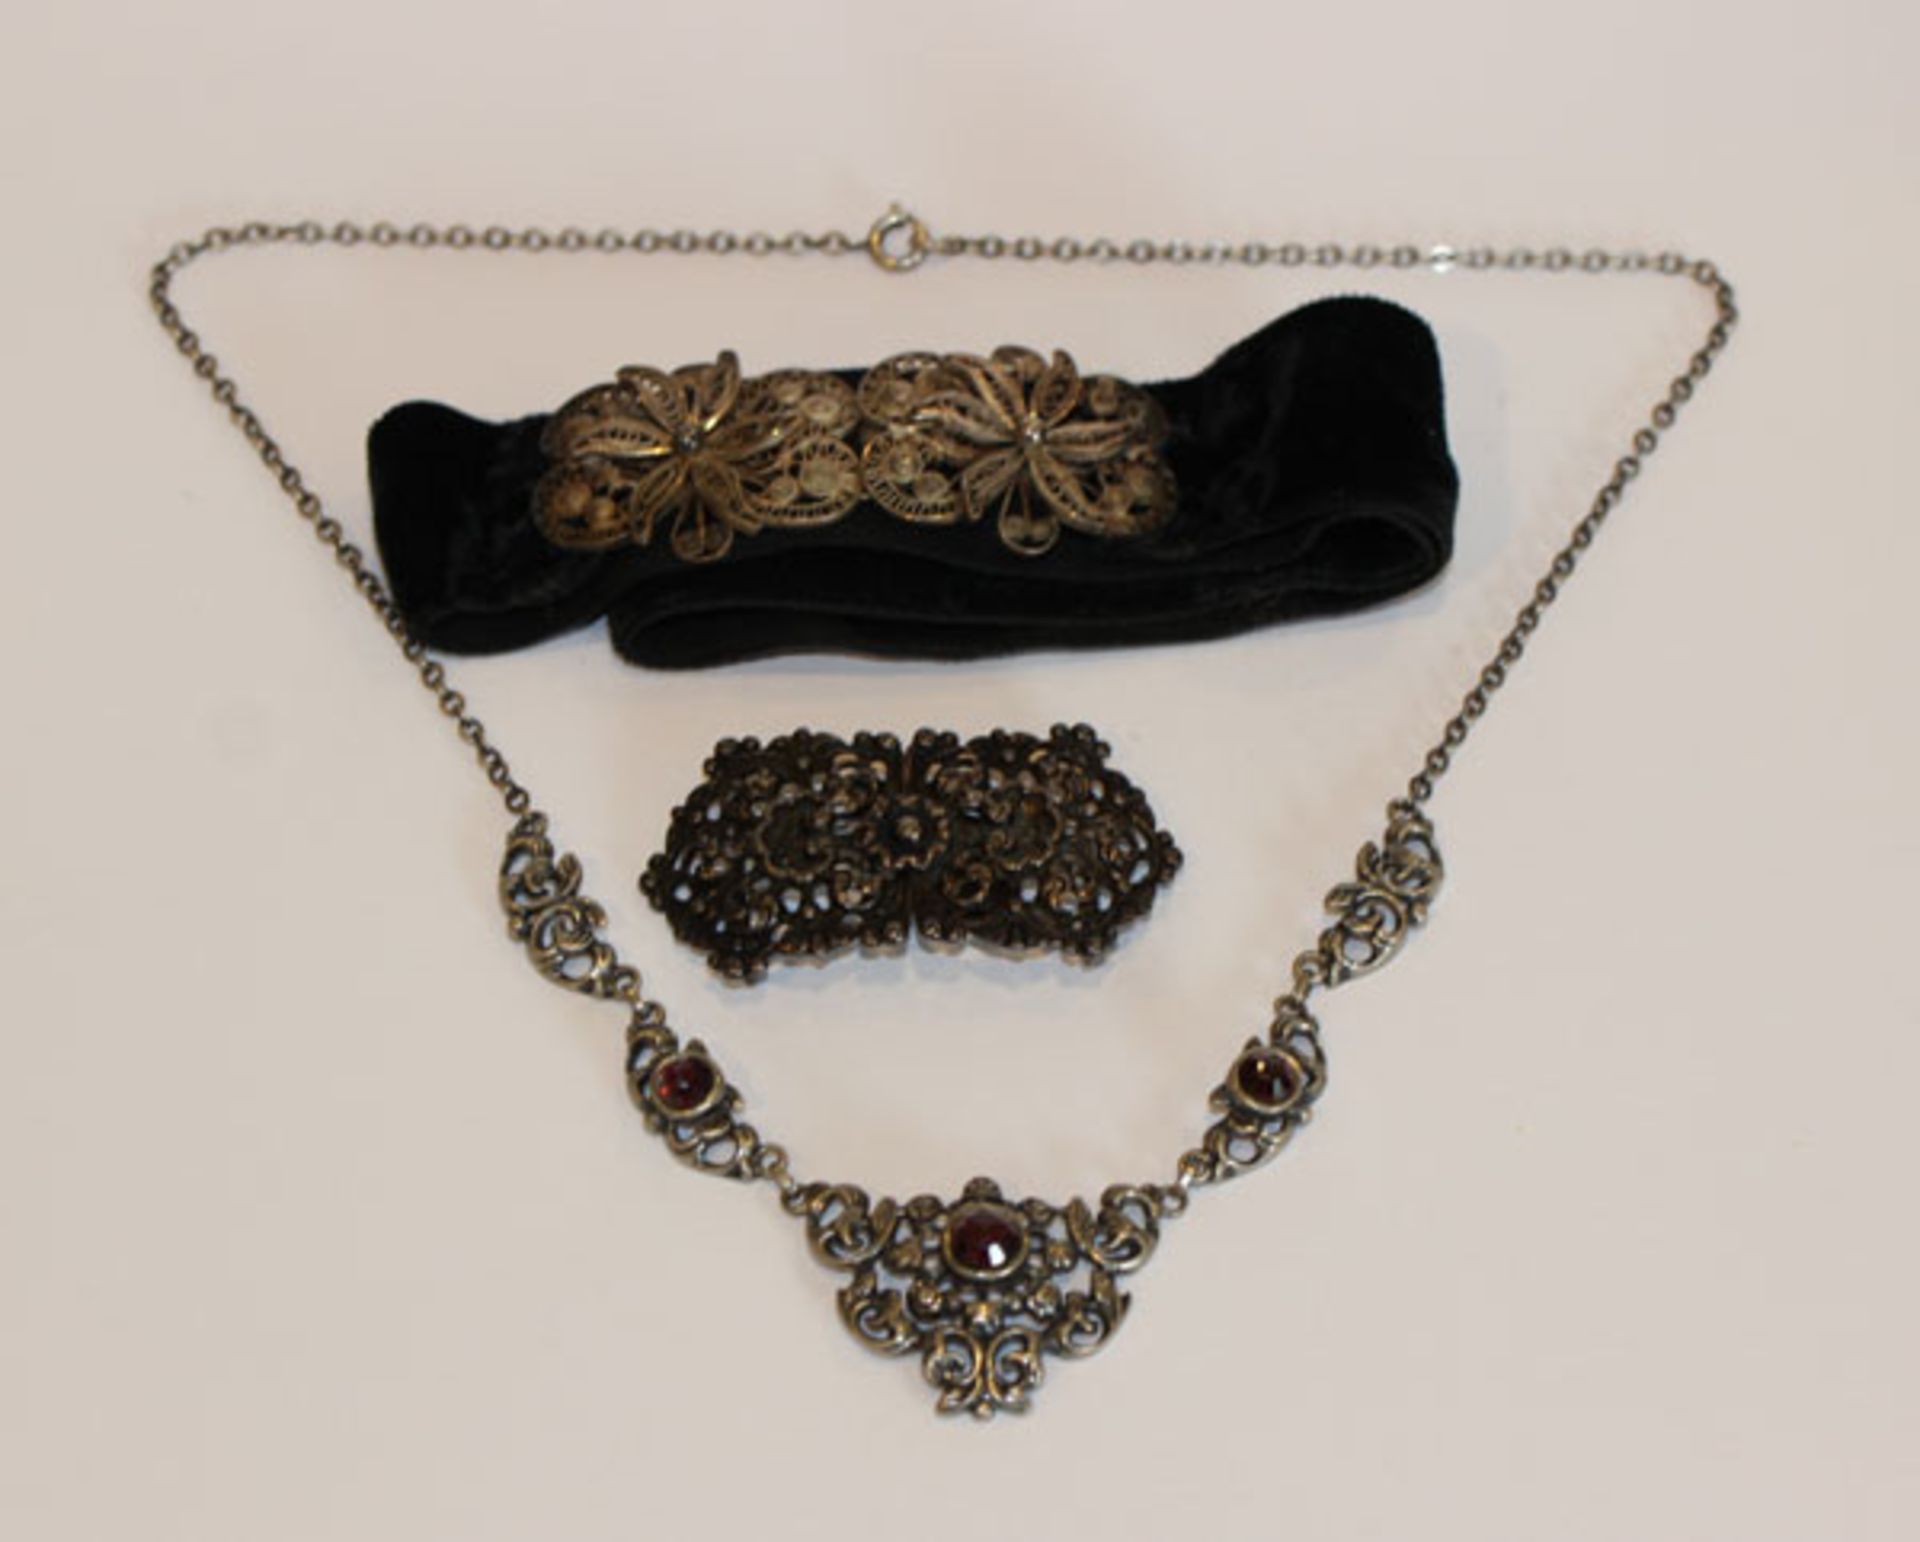 Silber Trachtenschmuck: Collierkette mit Granaten, L 40 cm, Schließe mit Reliefdekor, B 5 cm, und